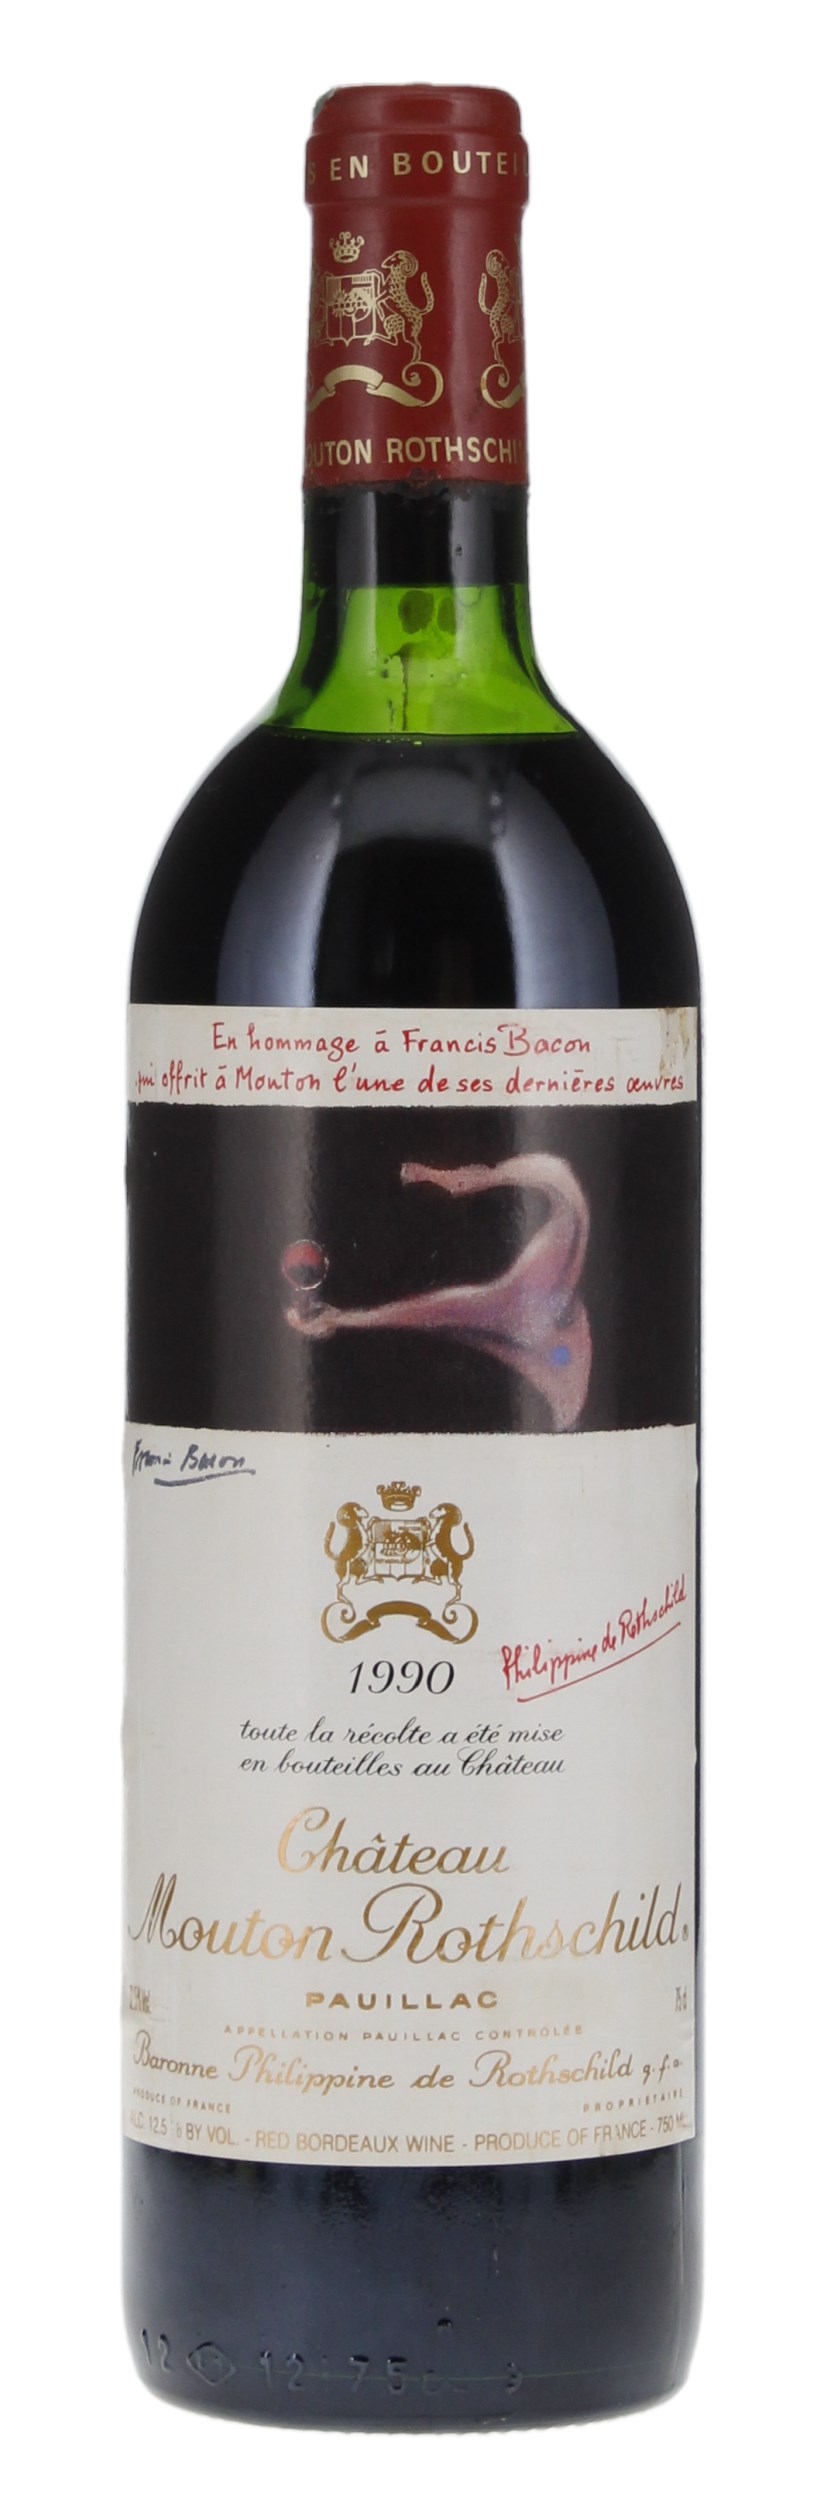 1990 Château Mouton Rothschild Bordeaux Red Blends (Claret